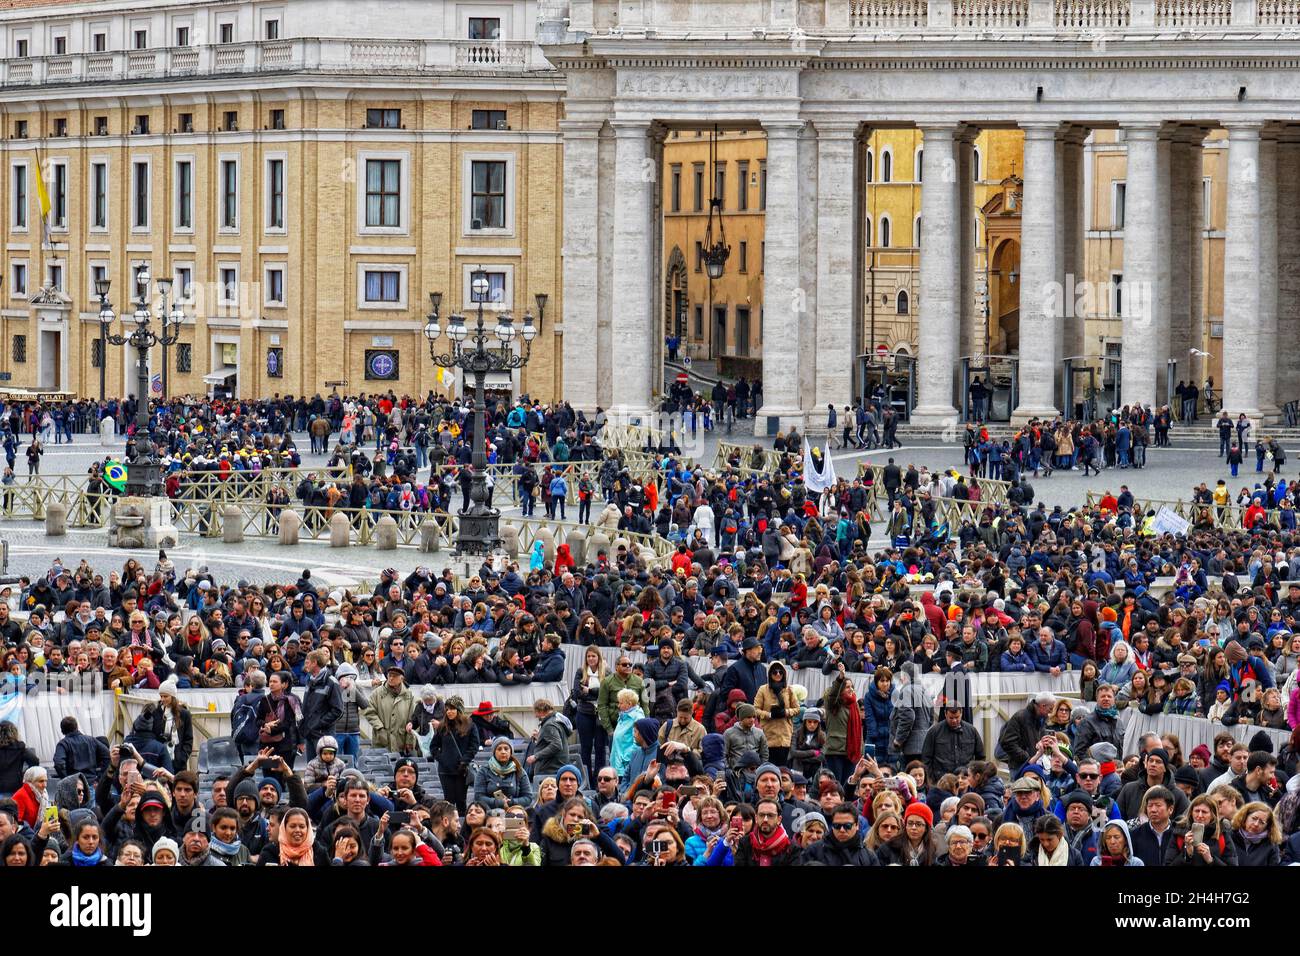 Place Saint-Pierre pendant l'audience papale, Vatican, Rome, Italie Banque D'Images